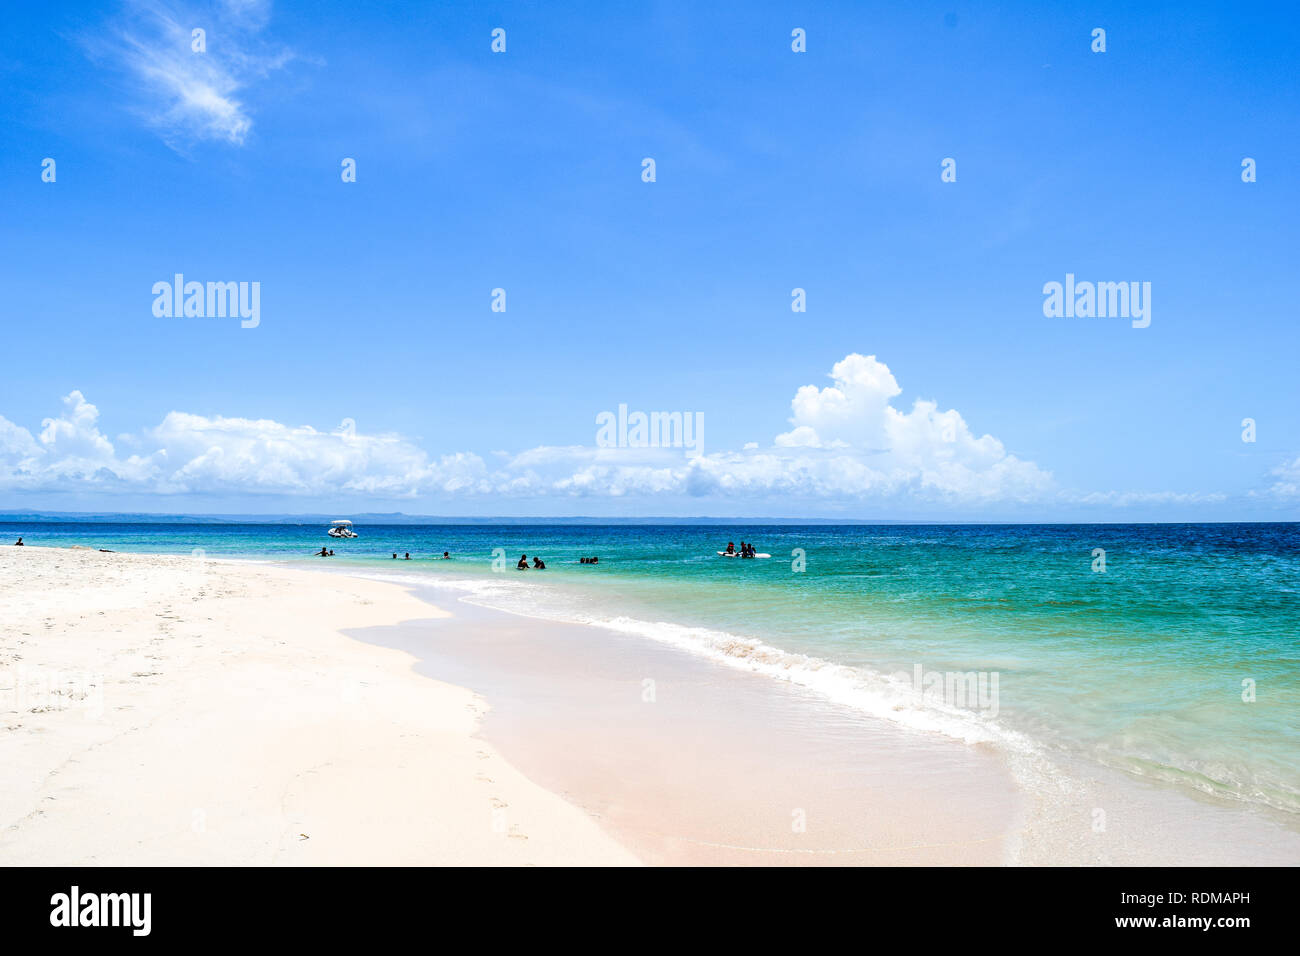 Palm Beach de l'île paradis idyllique Tropicale - Caraïbes - Cayo Levantado Banque D'Images